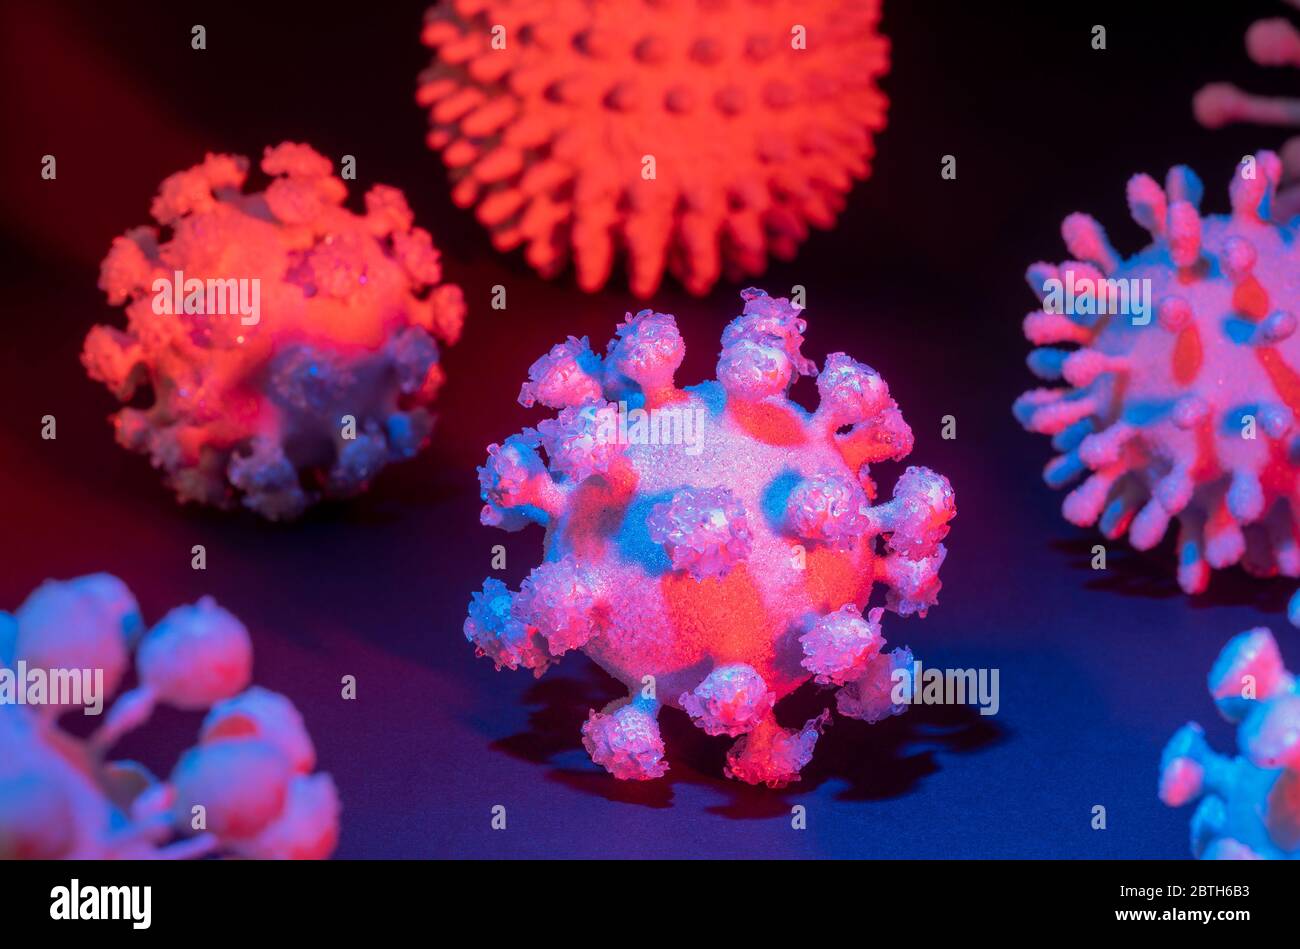 immagine di alcuni colorati virus simbolici illuminati sul retro scuro Foto Stock